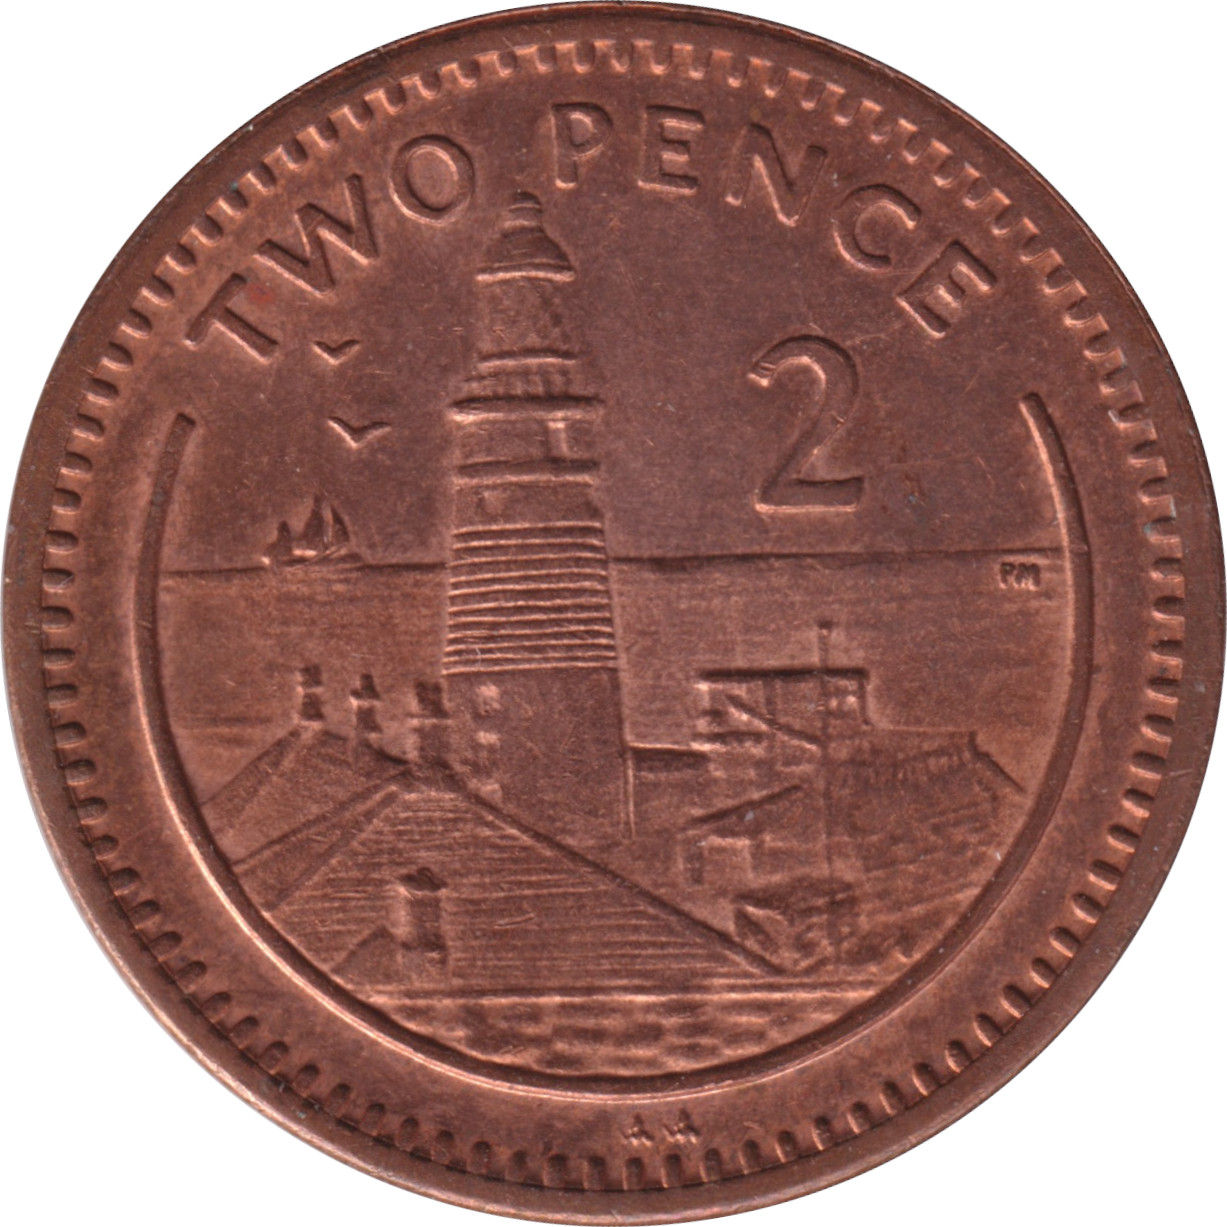 2 pence - Elizabeth II - Tête agée